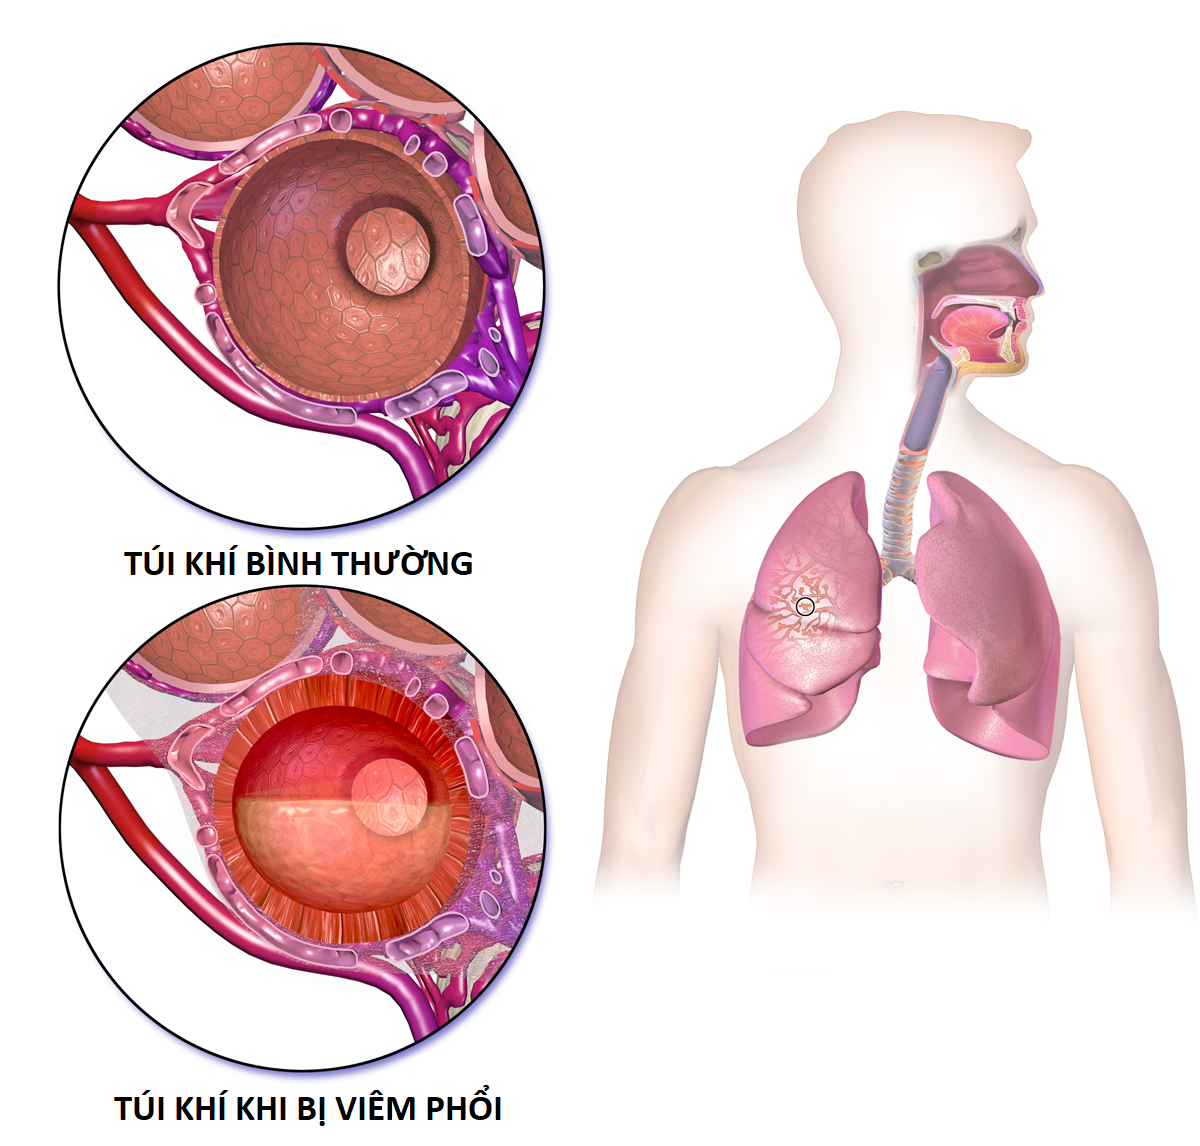 Viêm phổi - Nguyên nhân gây tử vong hàng đầu ở trẻ em